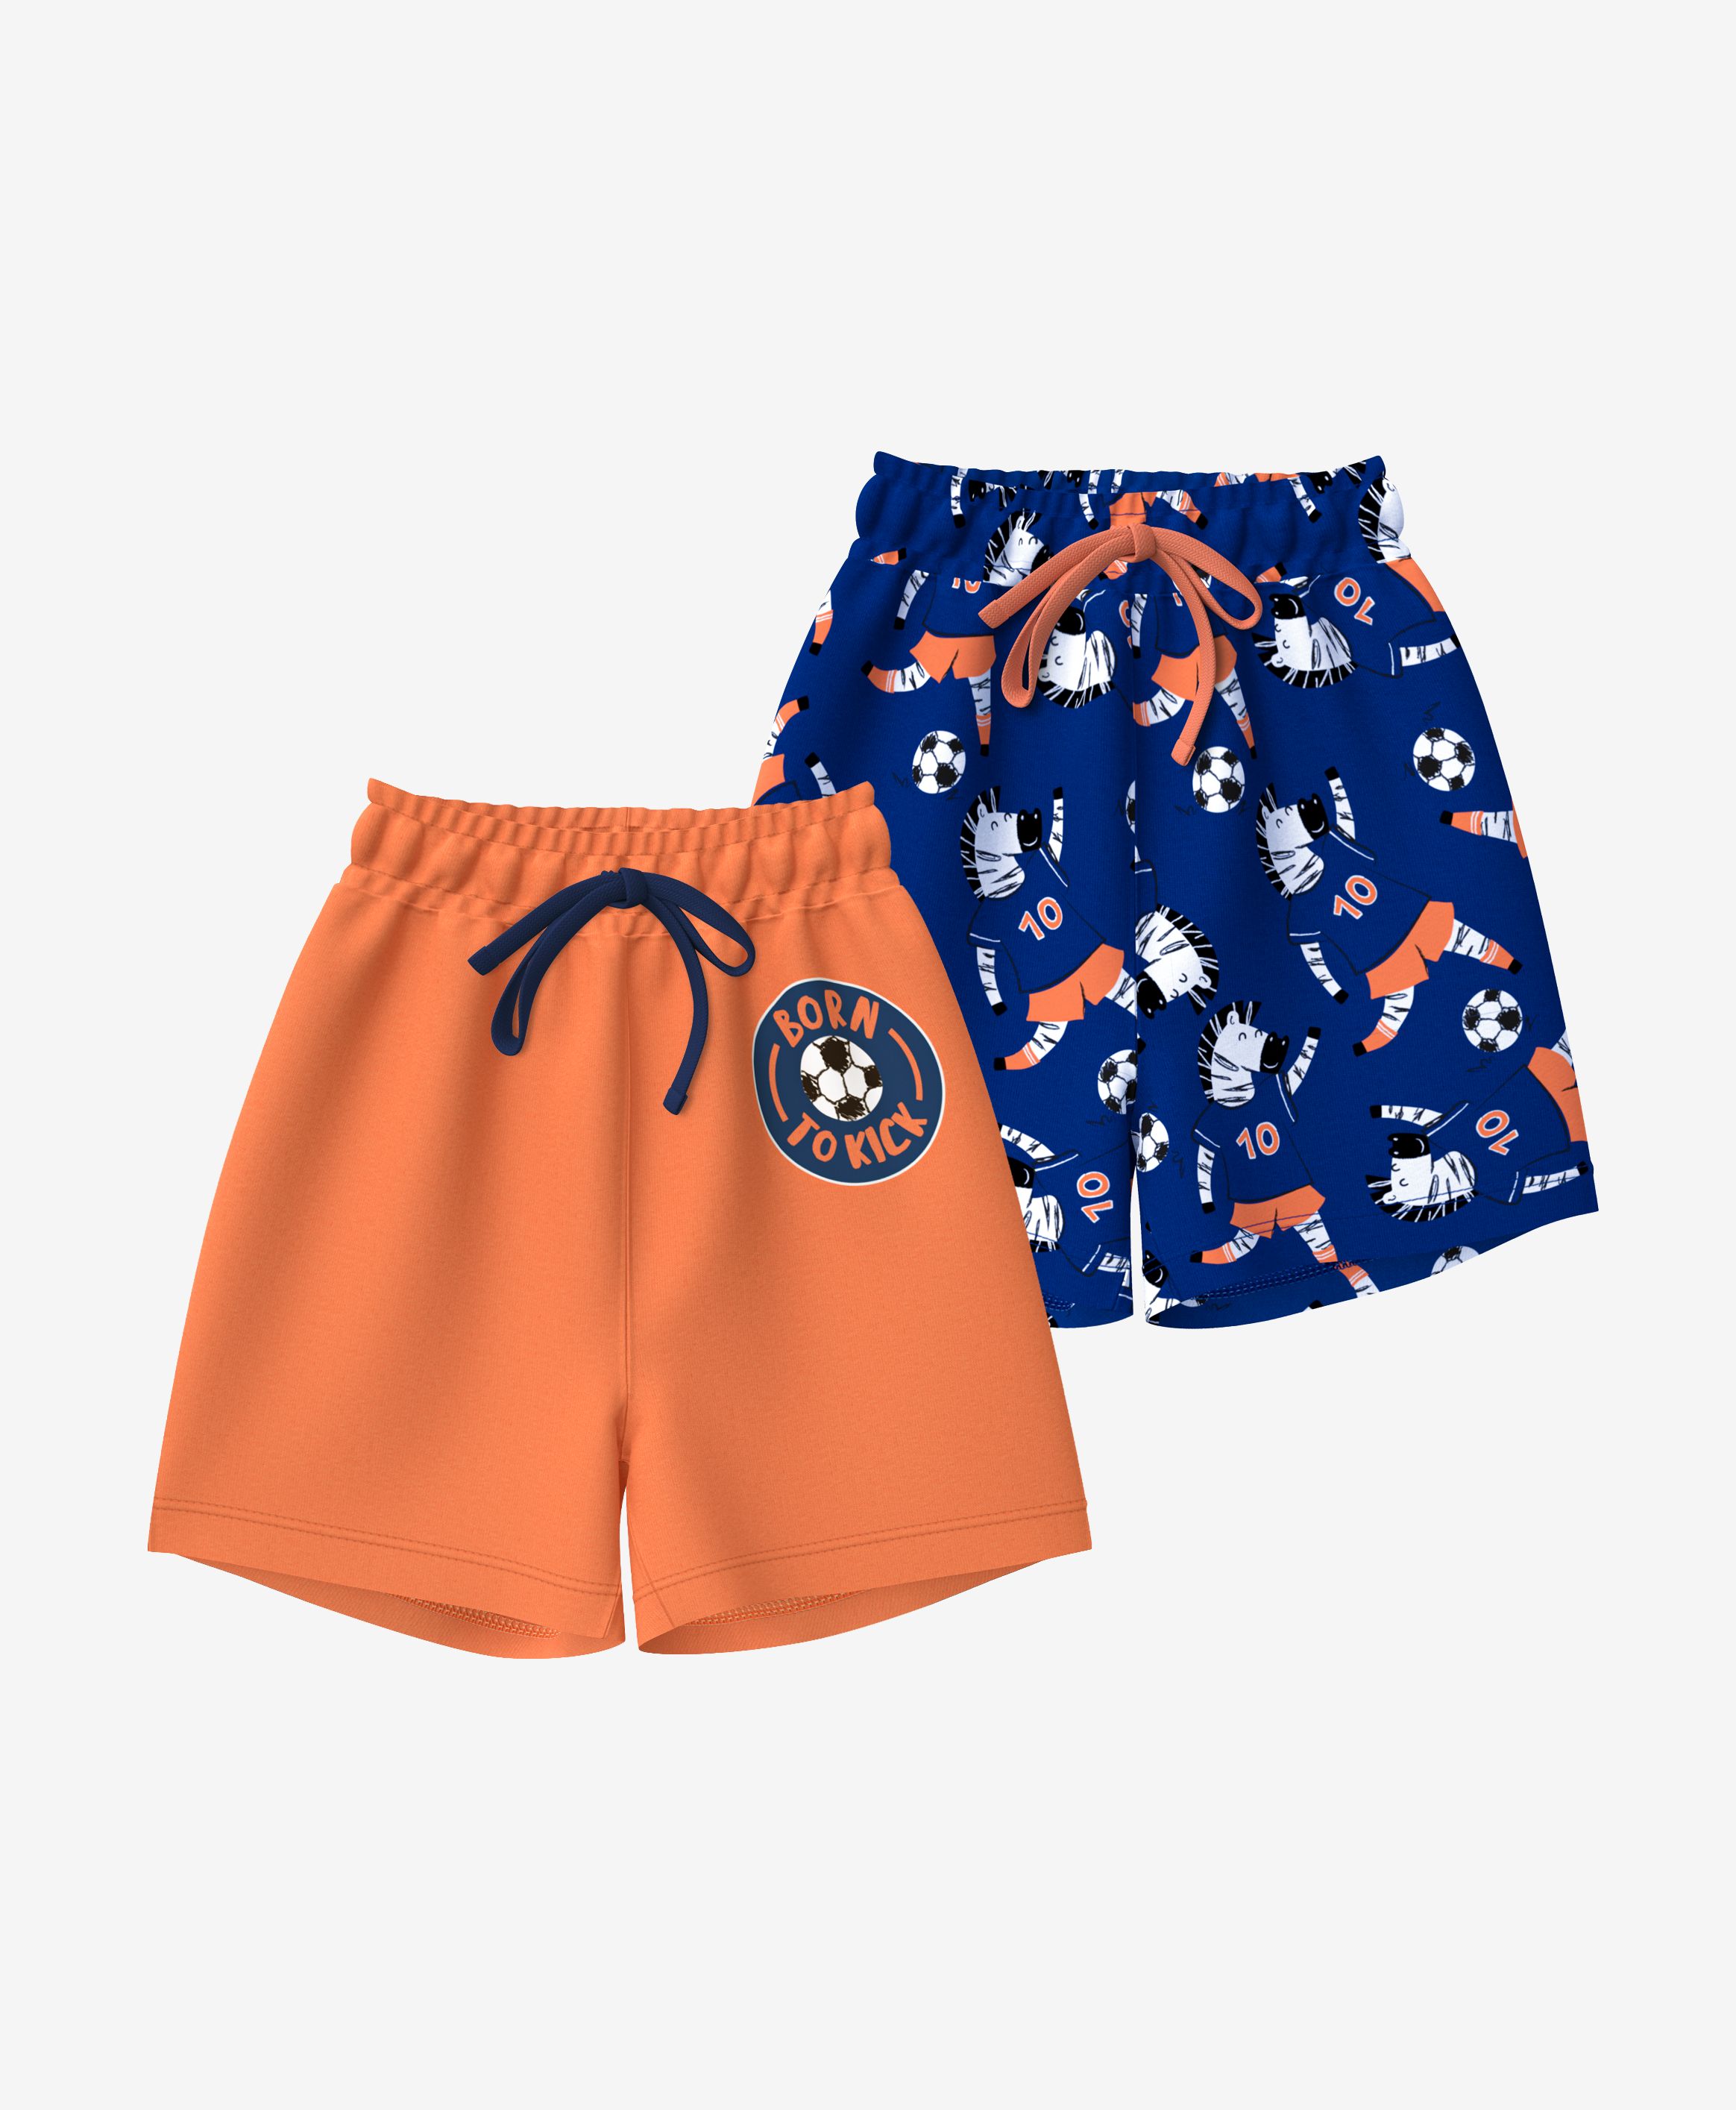 Shorts, 2er-Pack, 100% Baumwolle, für Jungen, orange, 74-98 cm